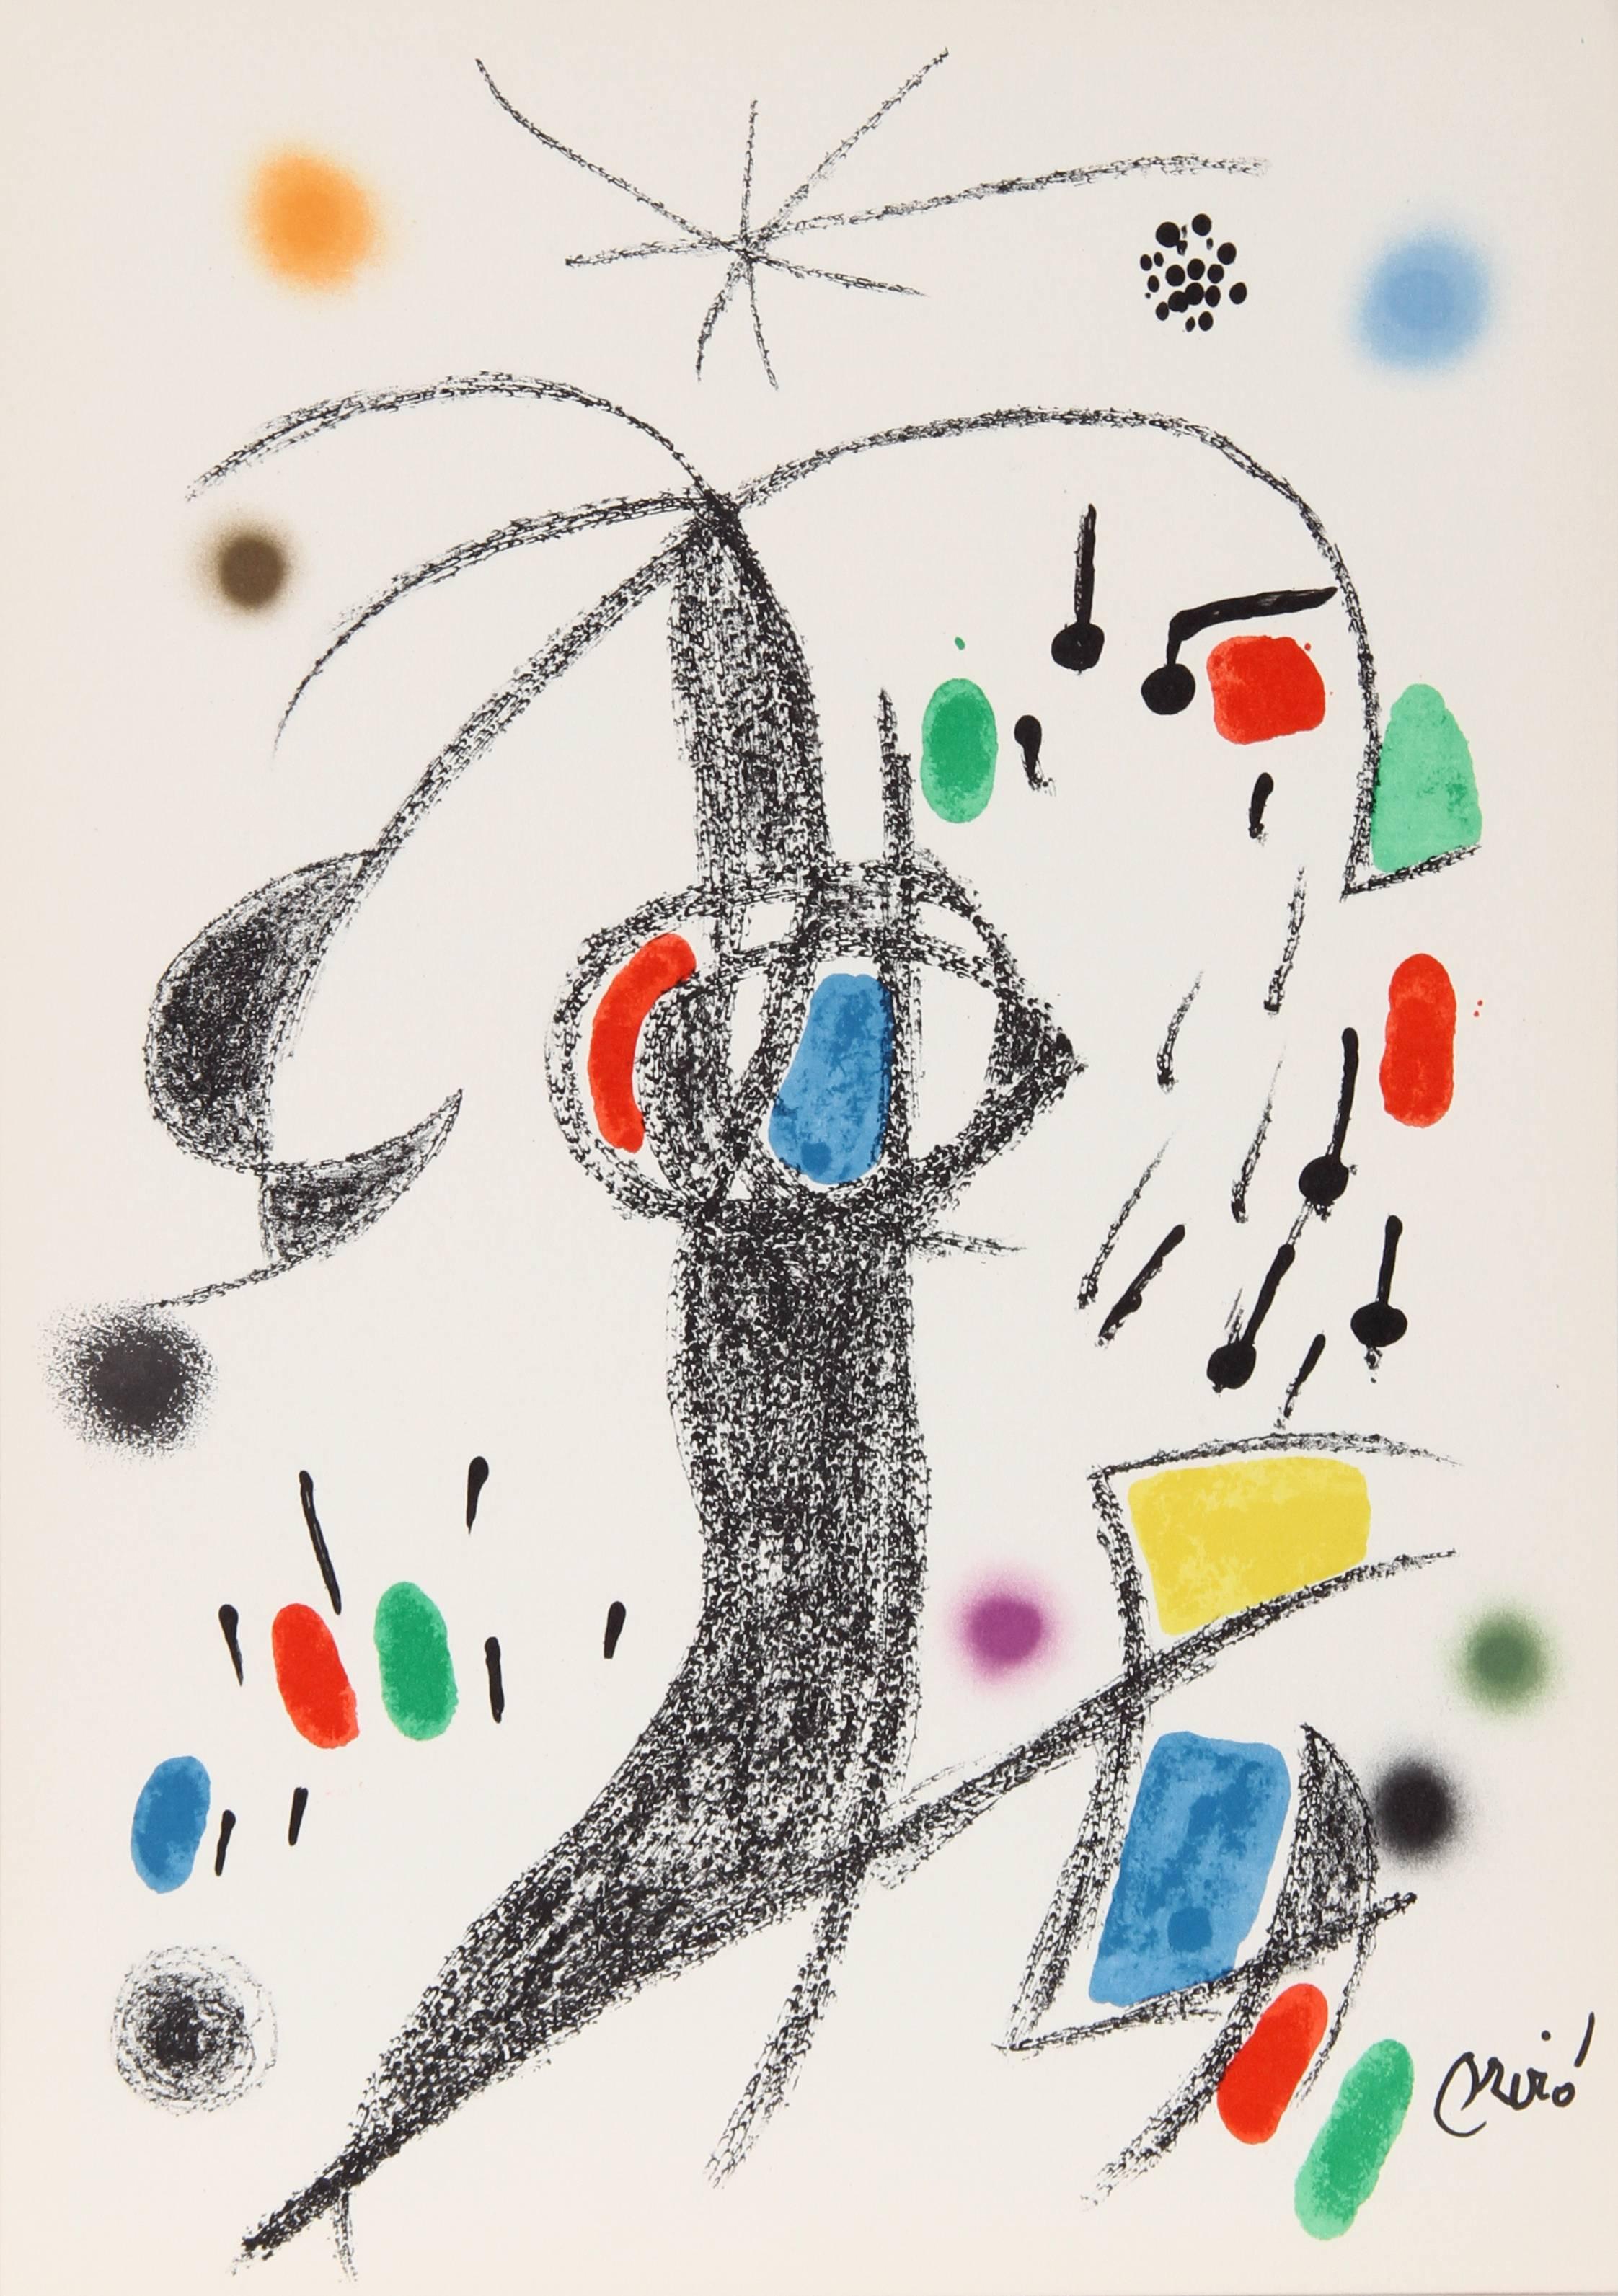  Maravillas con Variaciones Acrosticas en el Jardin de Miro (Number 21) - Print by Joan Miró